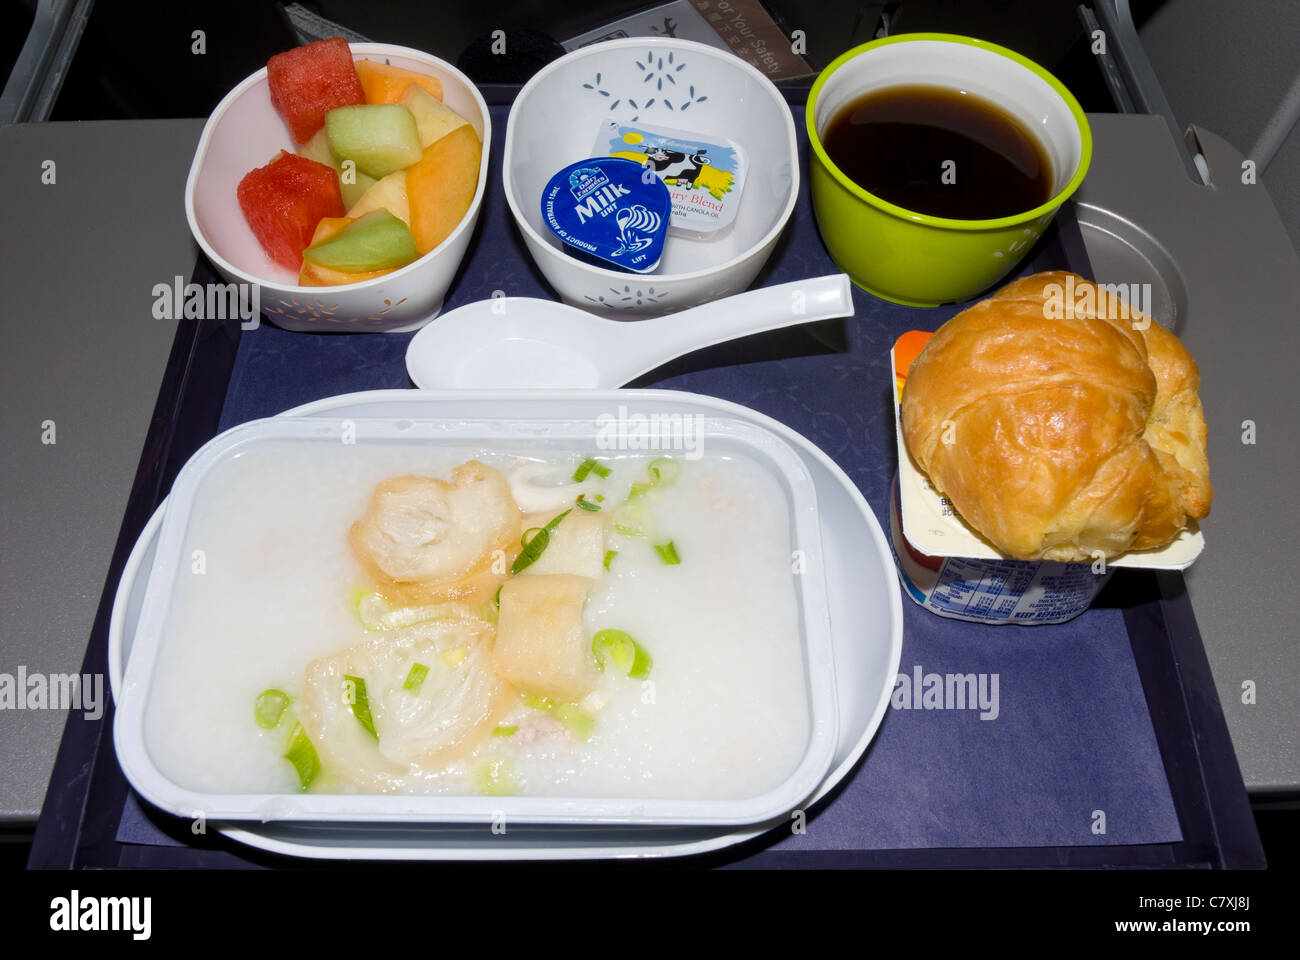 Airline-Essen in der Economy Class: Kabeljau in Sauce, Croissants, Obst, Salat und Kaffee; während des Fluges Essen; Essen auf einer Ebene; Flugzeug-Essen; Tablett Stockfoto